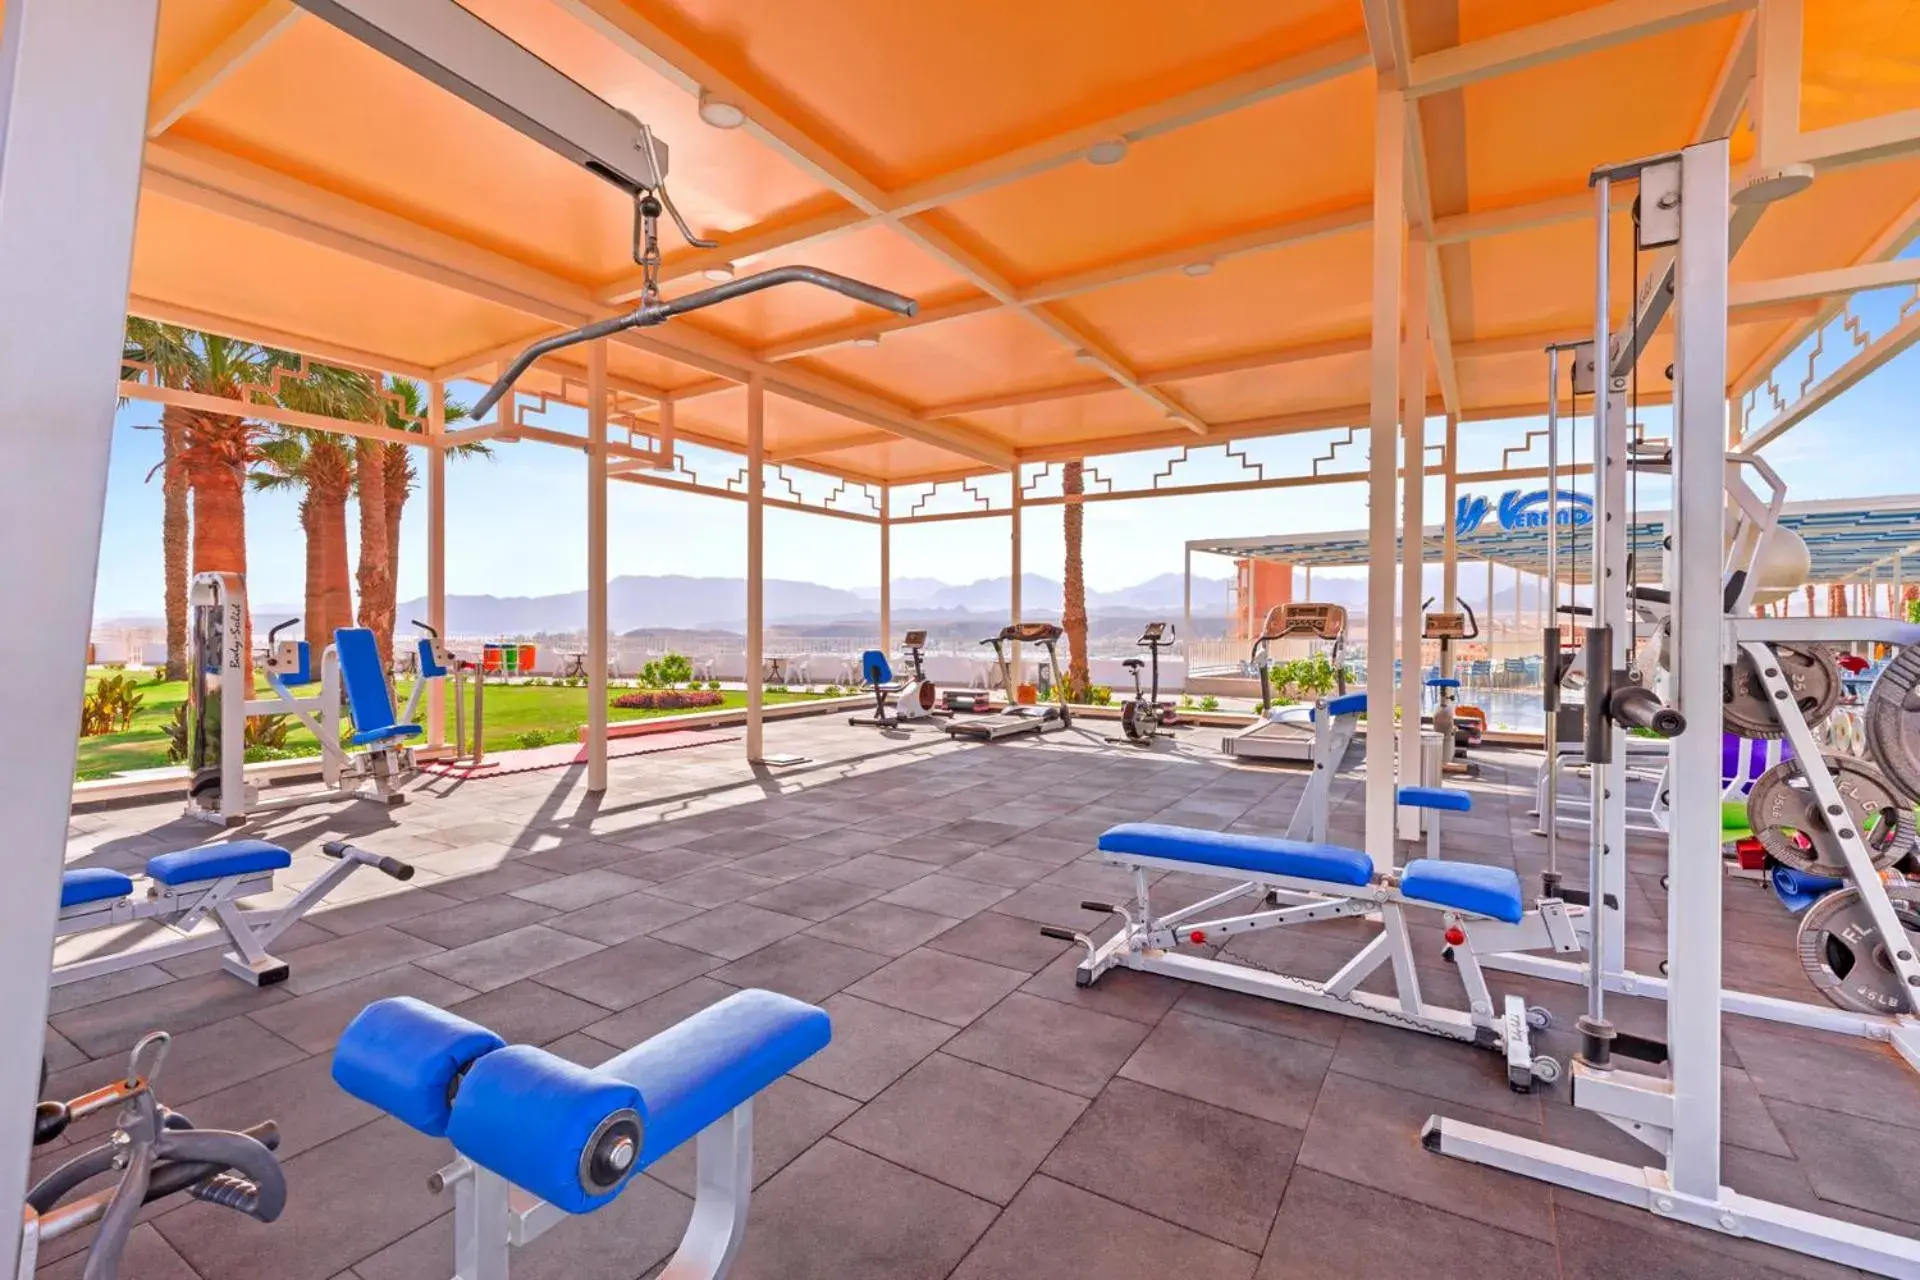 Fitness centre/facilities, Fitness Center/Facilities in Albatros Sharm Resort - By Pickalbatros